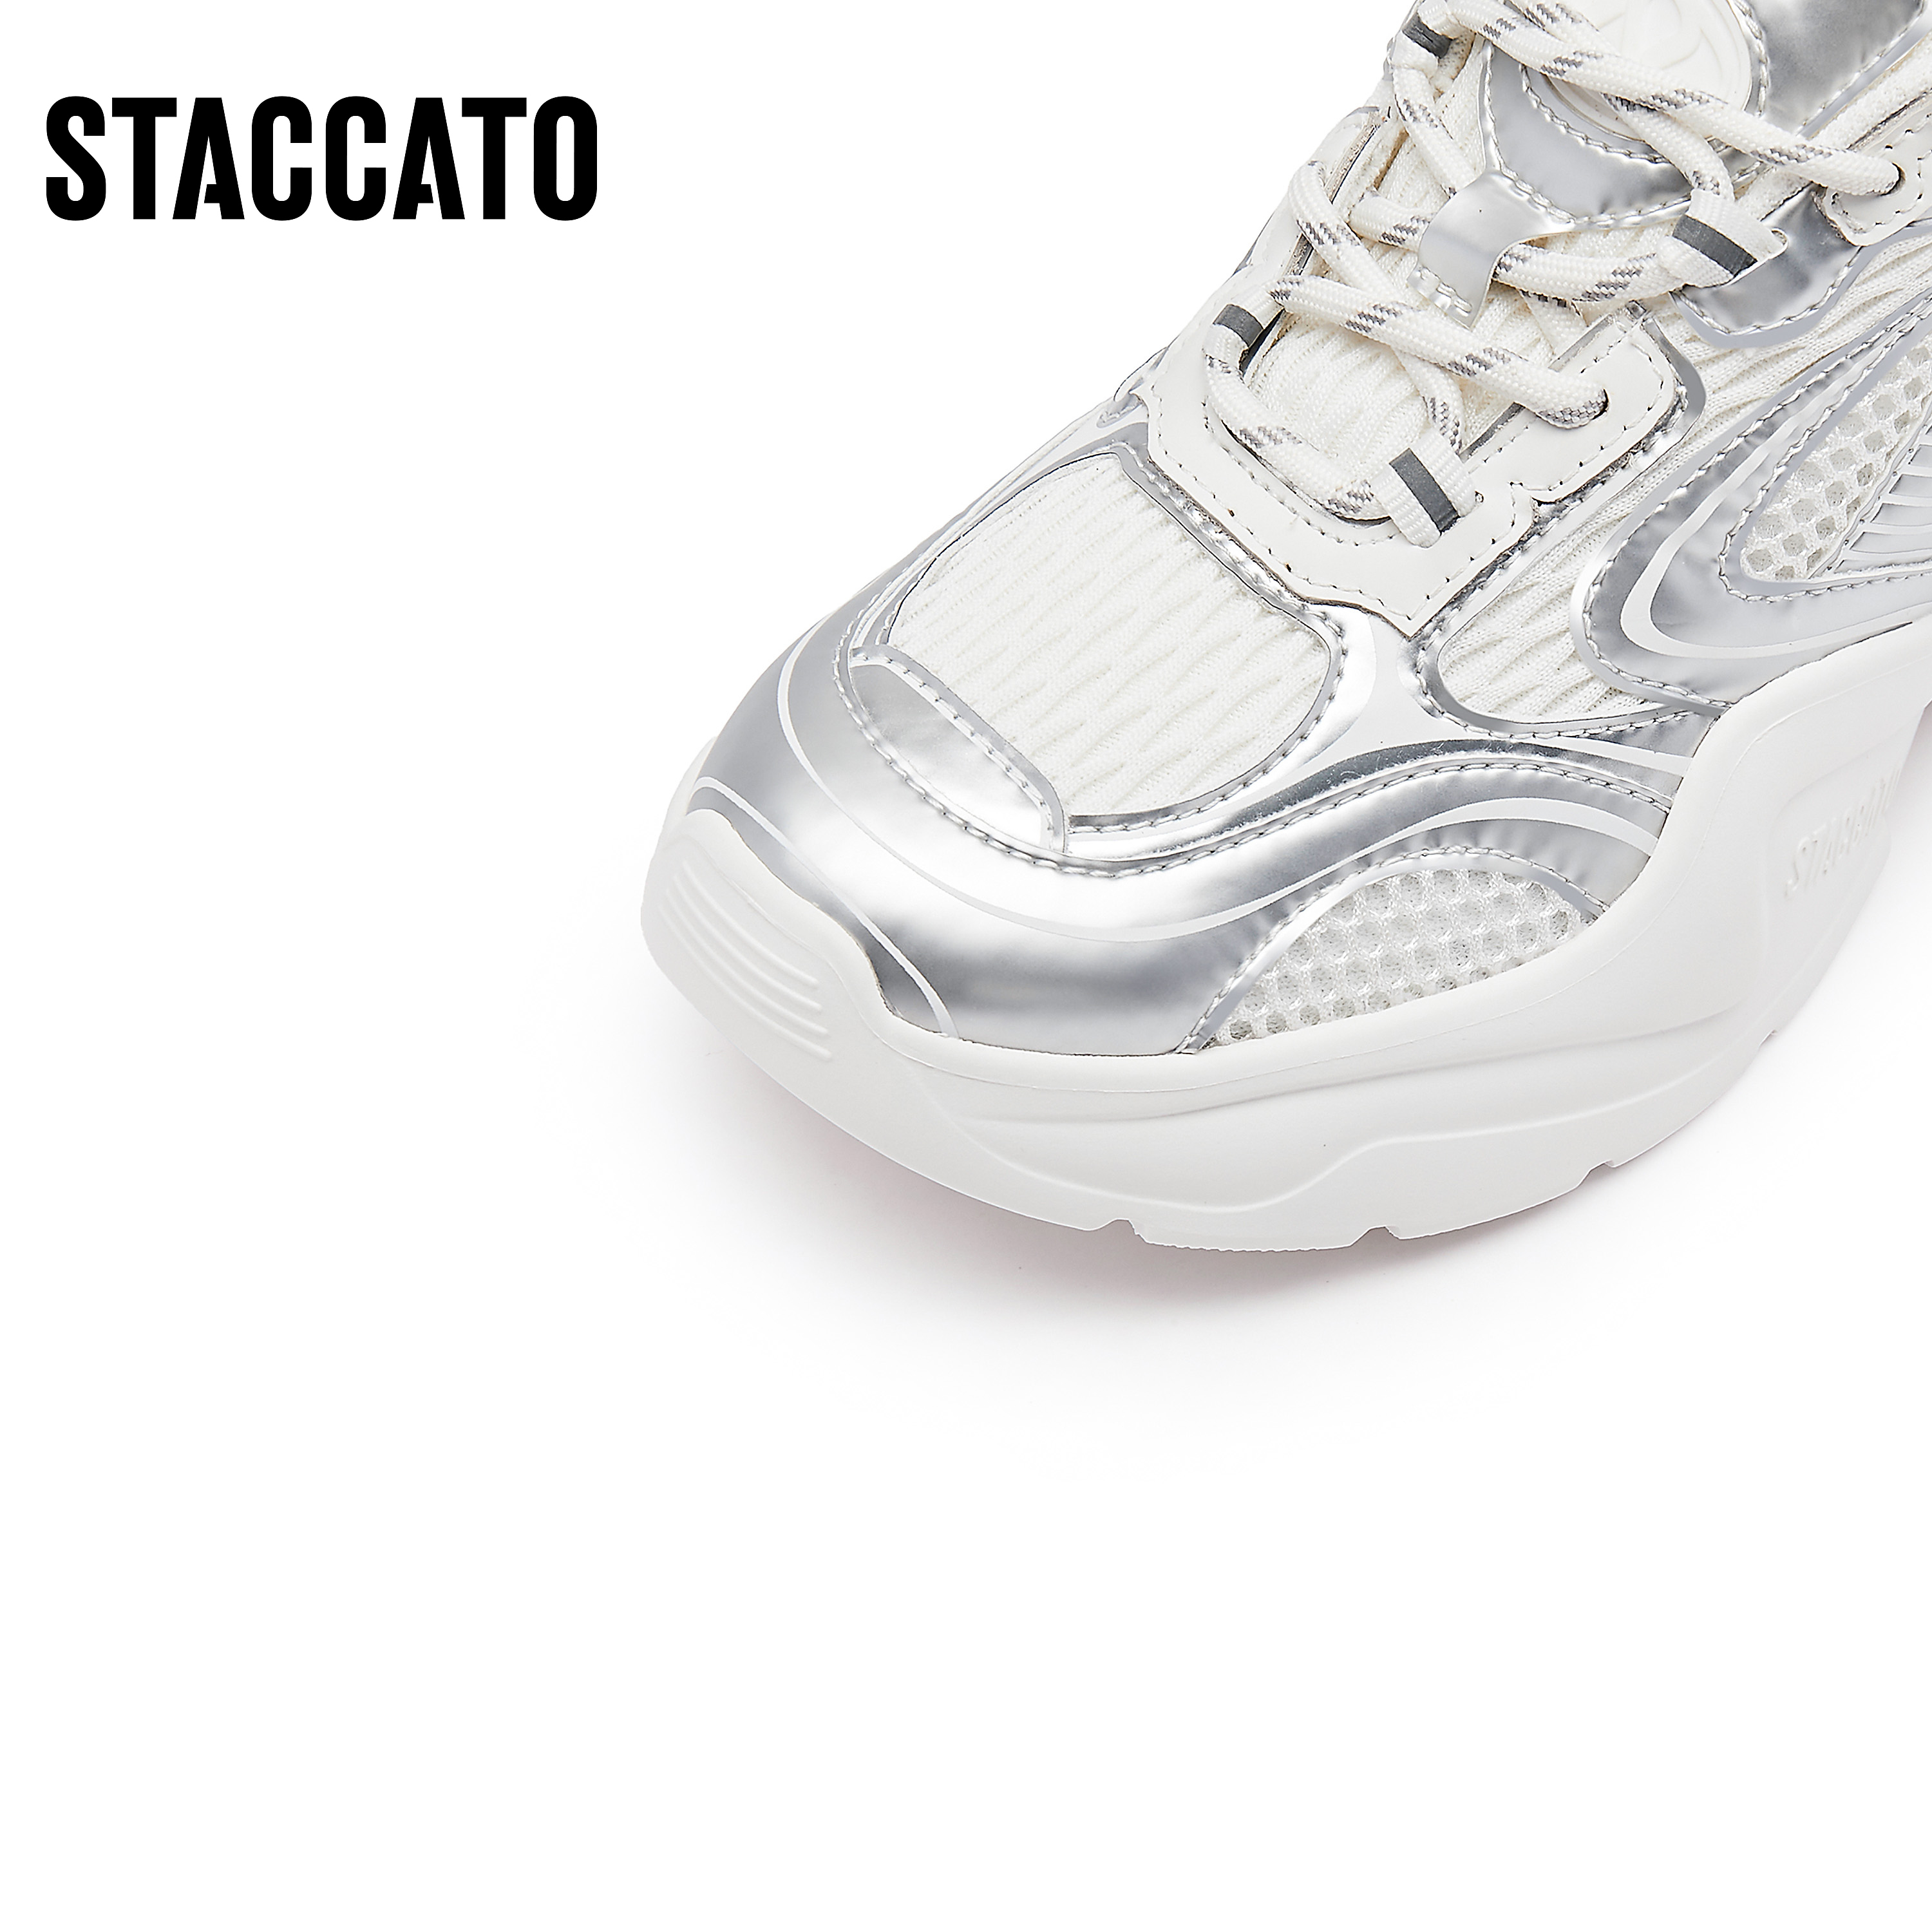 思加图新款时尚老爹鞋厚底增高透气运动休闲鞋ECE68CM3C-图3